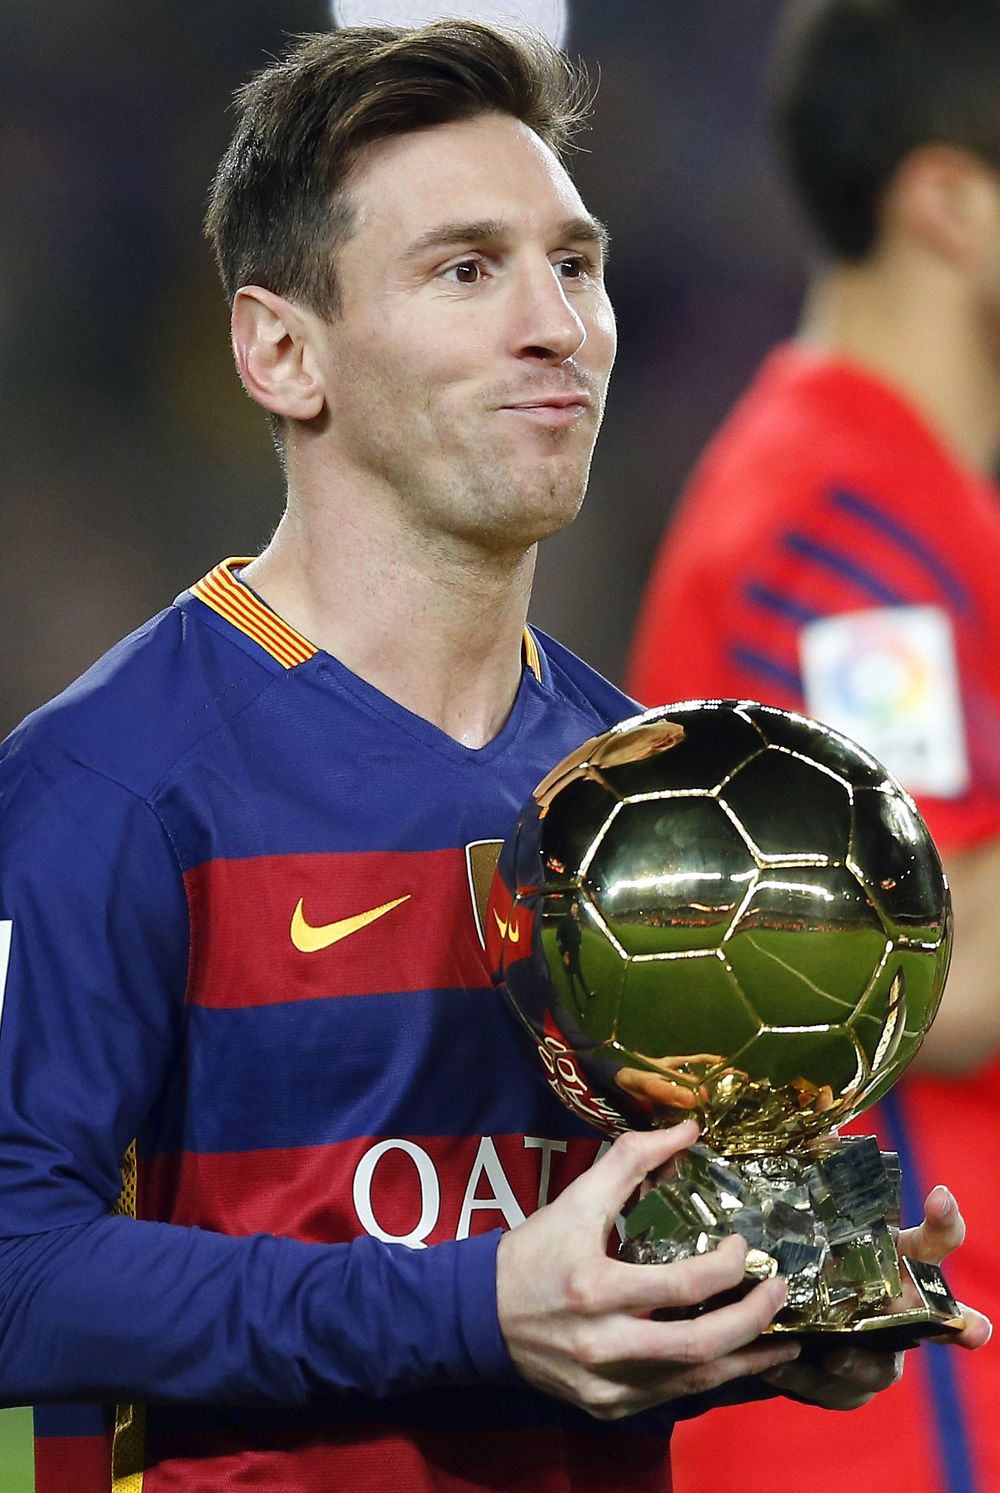 Biografi Lionel Messi Lengkap – Amat